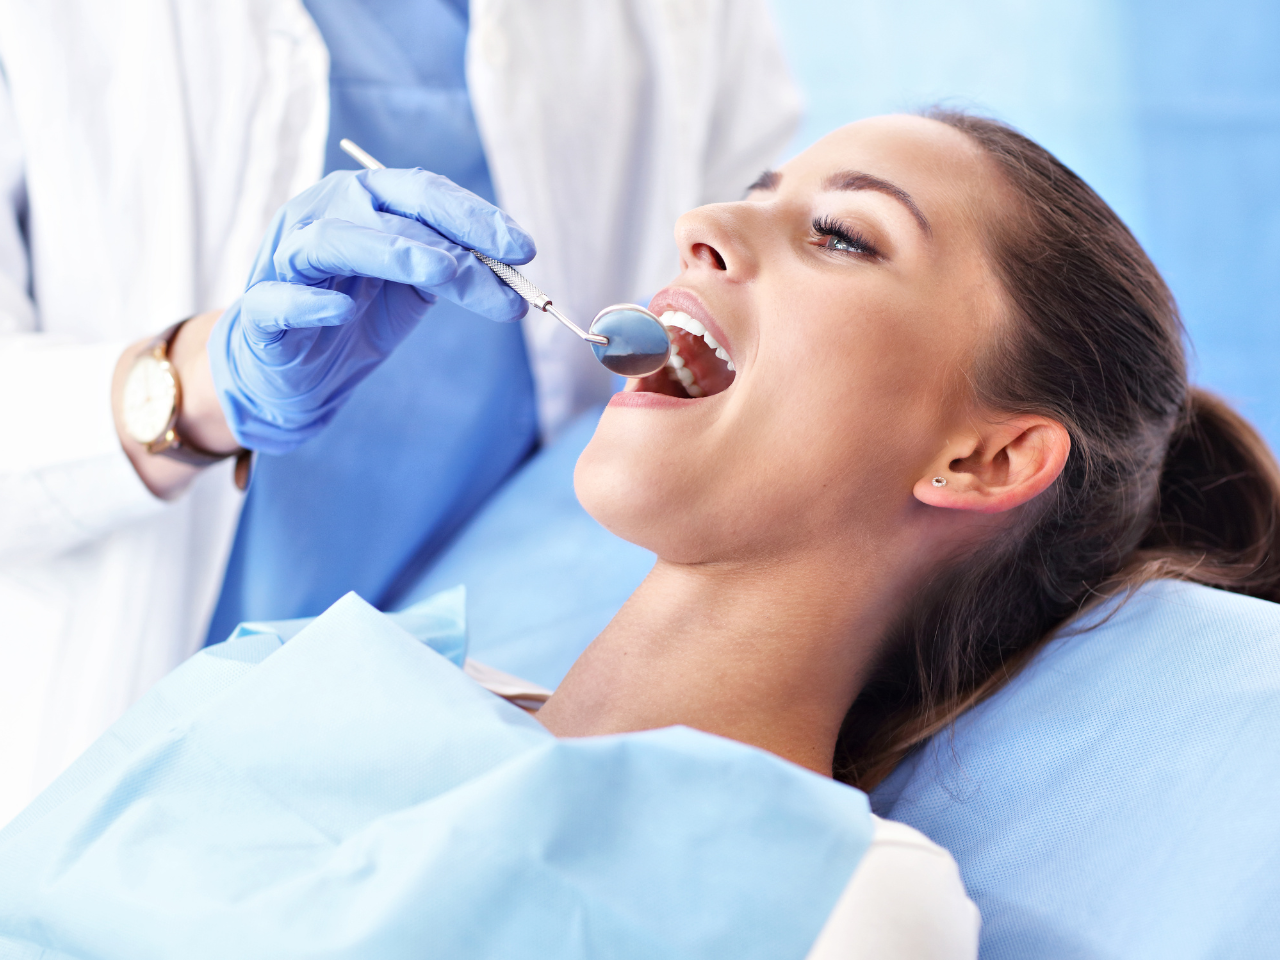 ile kosztuje wizyta u dentysty prywatnie - kobieta na wizycie u dentysty